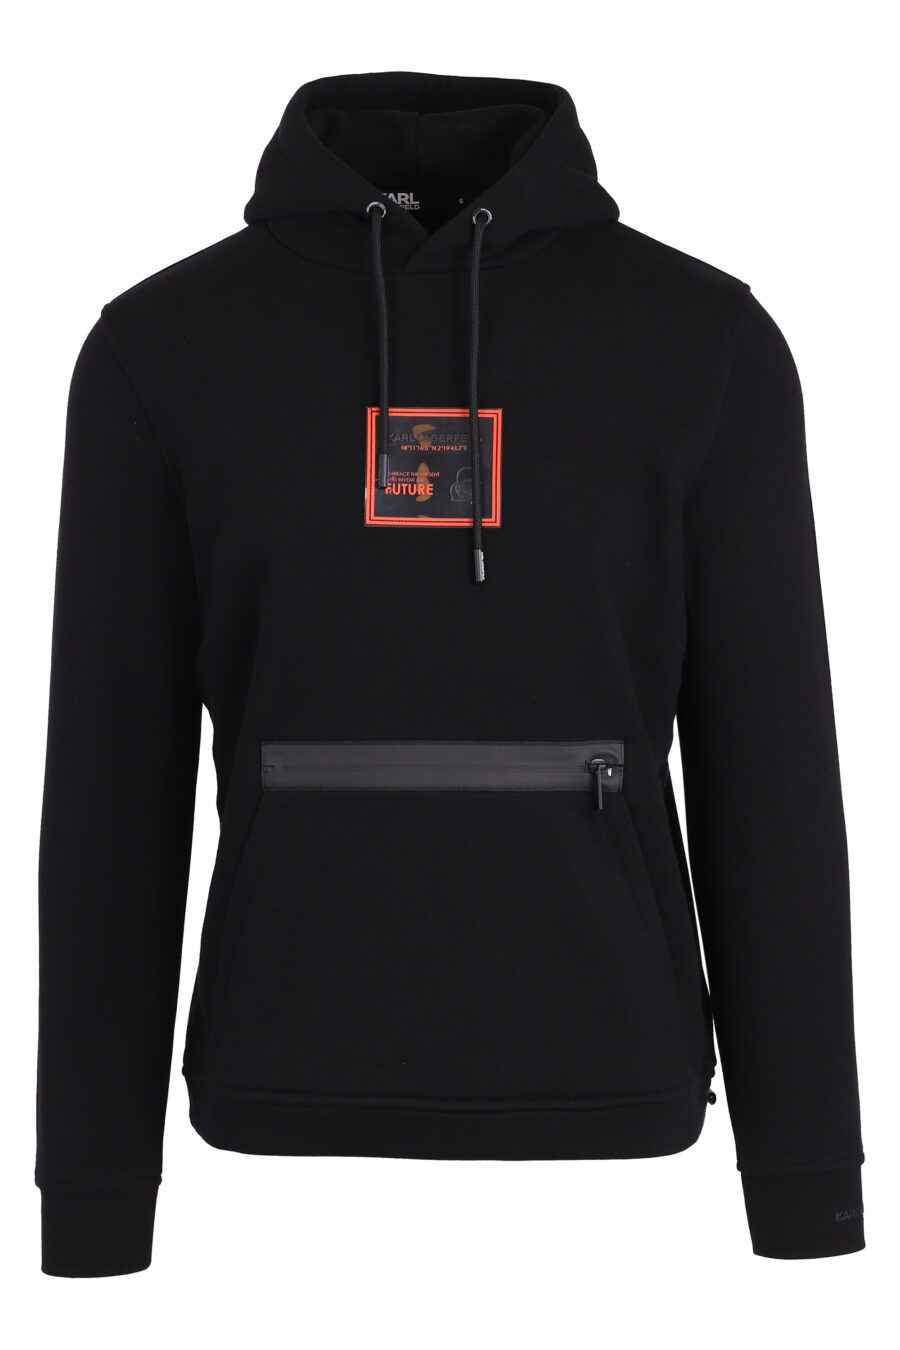 Schwarzes Sweatshirt mit Kapuze und Reißverschlusstasche mit orangefarbenem Karo-Logo - IMG 4730